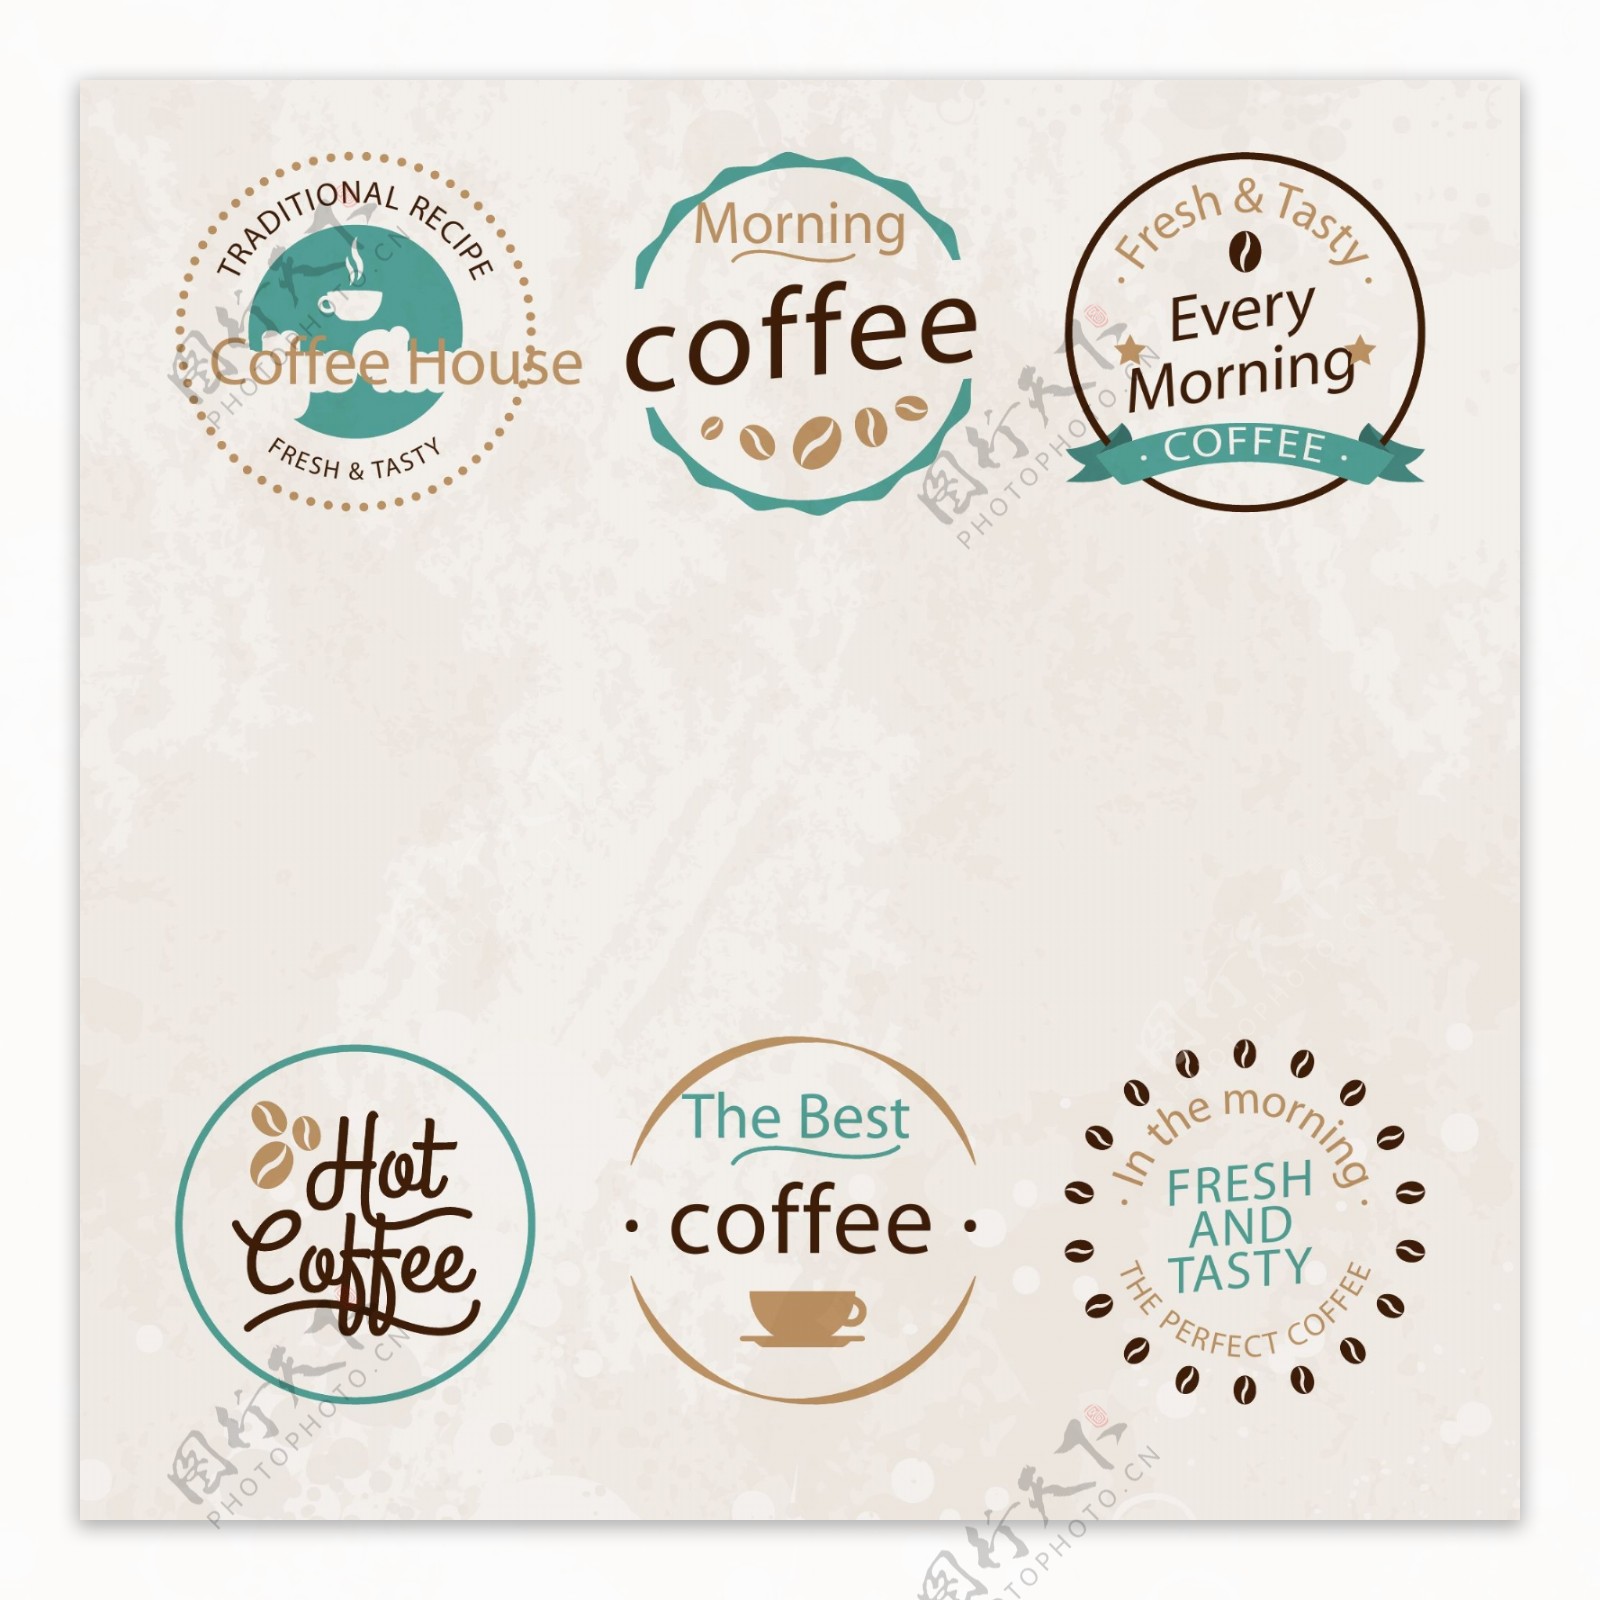 精美的咖啡标志设计素材